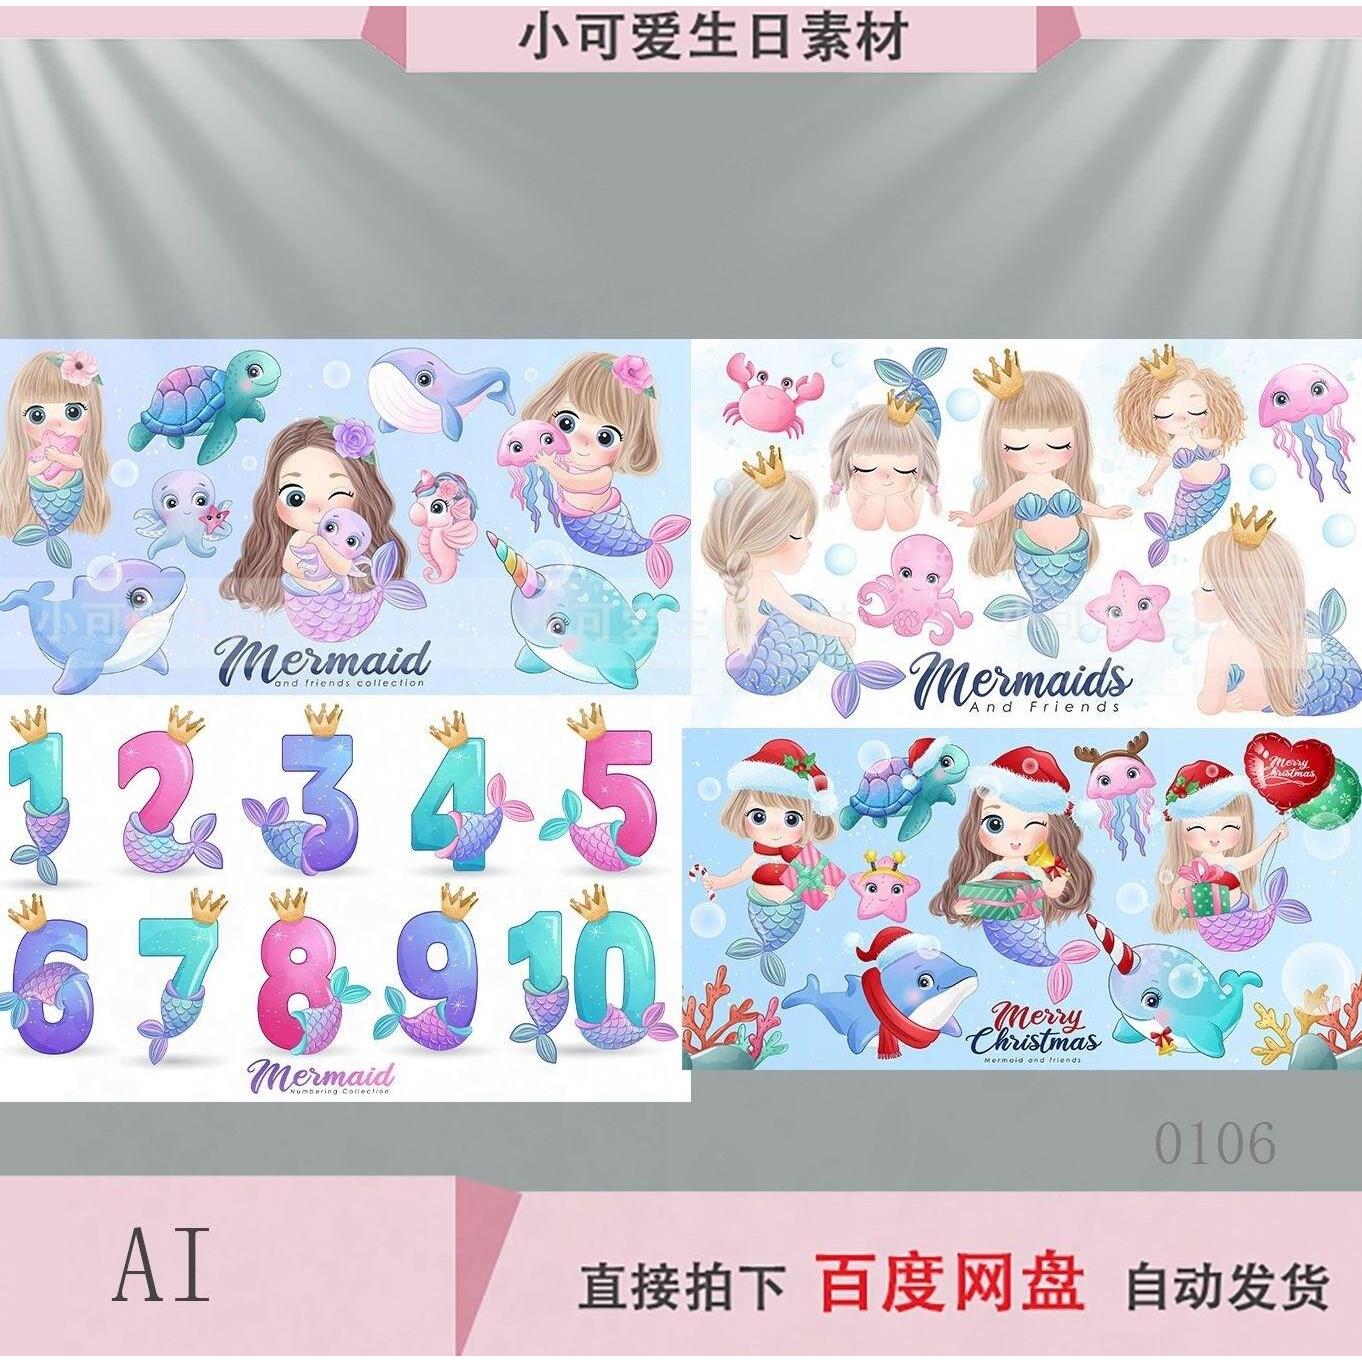 卡通美人鱼公主宝宝宴生日派对数字海报KT板背景印刷设计AI素材